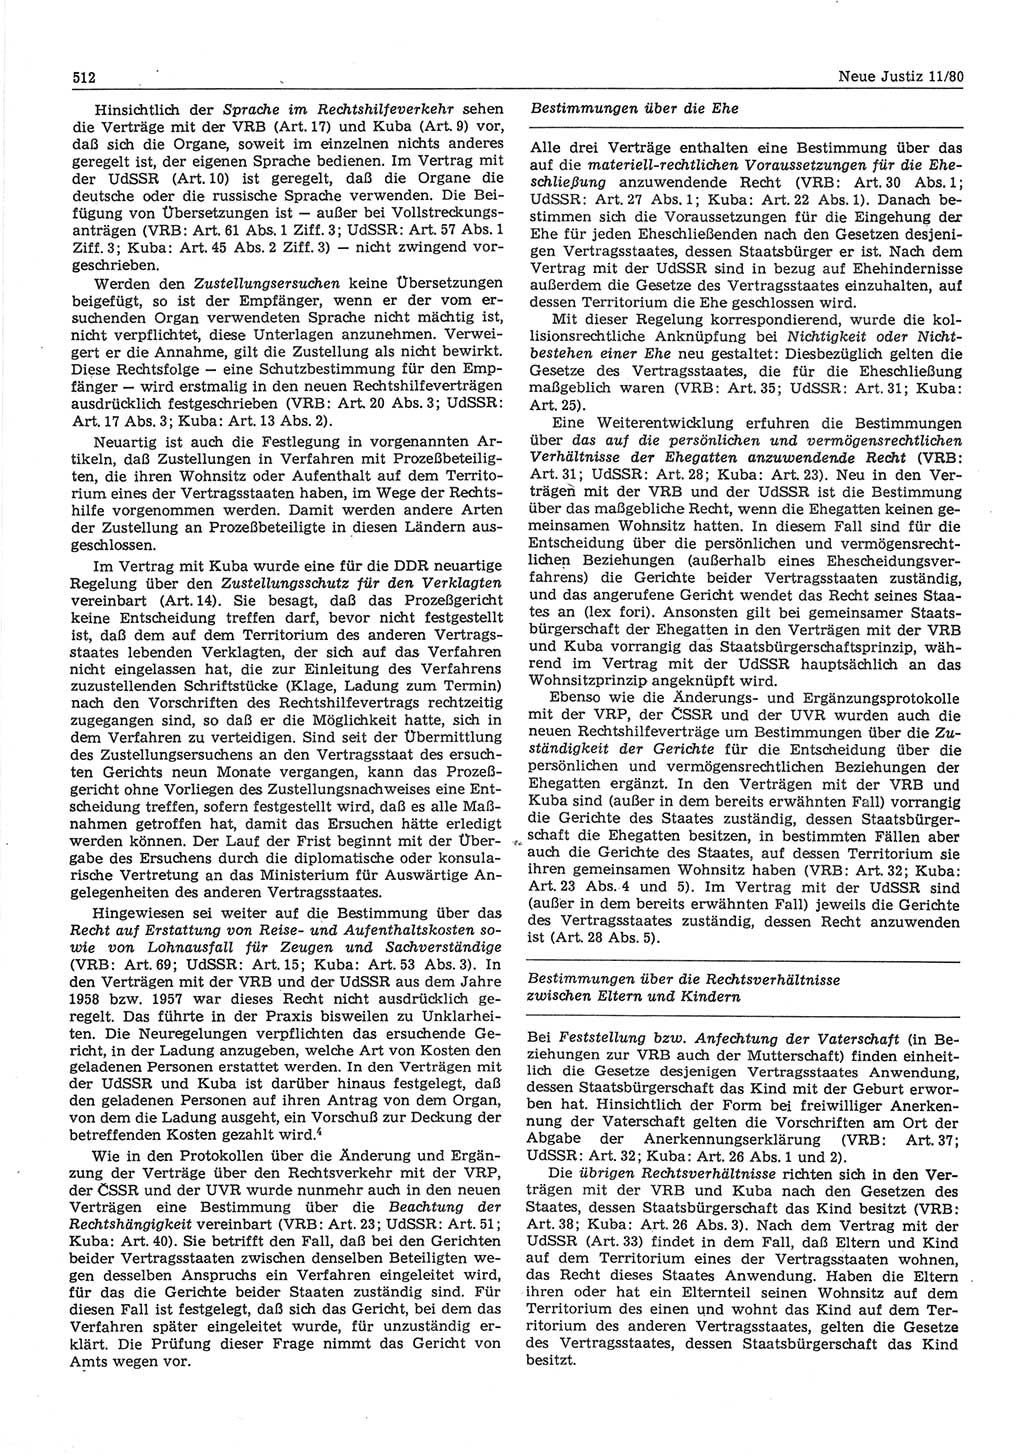 Neue Justiz (NJ), Zeitschrift für sozialistisches Recht und Gesetzlichkeit [Deutsche Demokratische Republik (DDR)], 34. Jahrgang 1980, Seite 512 (NJ DDR 1980, S. 512)